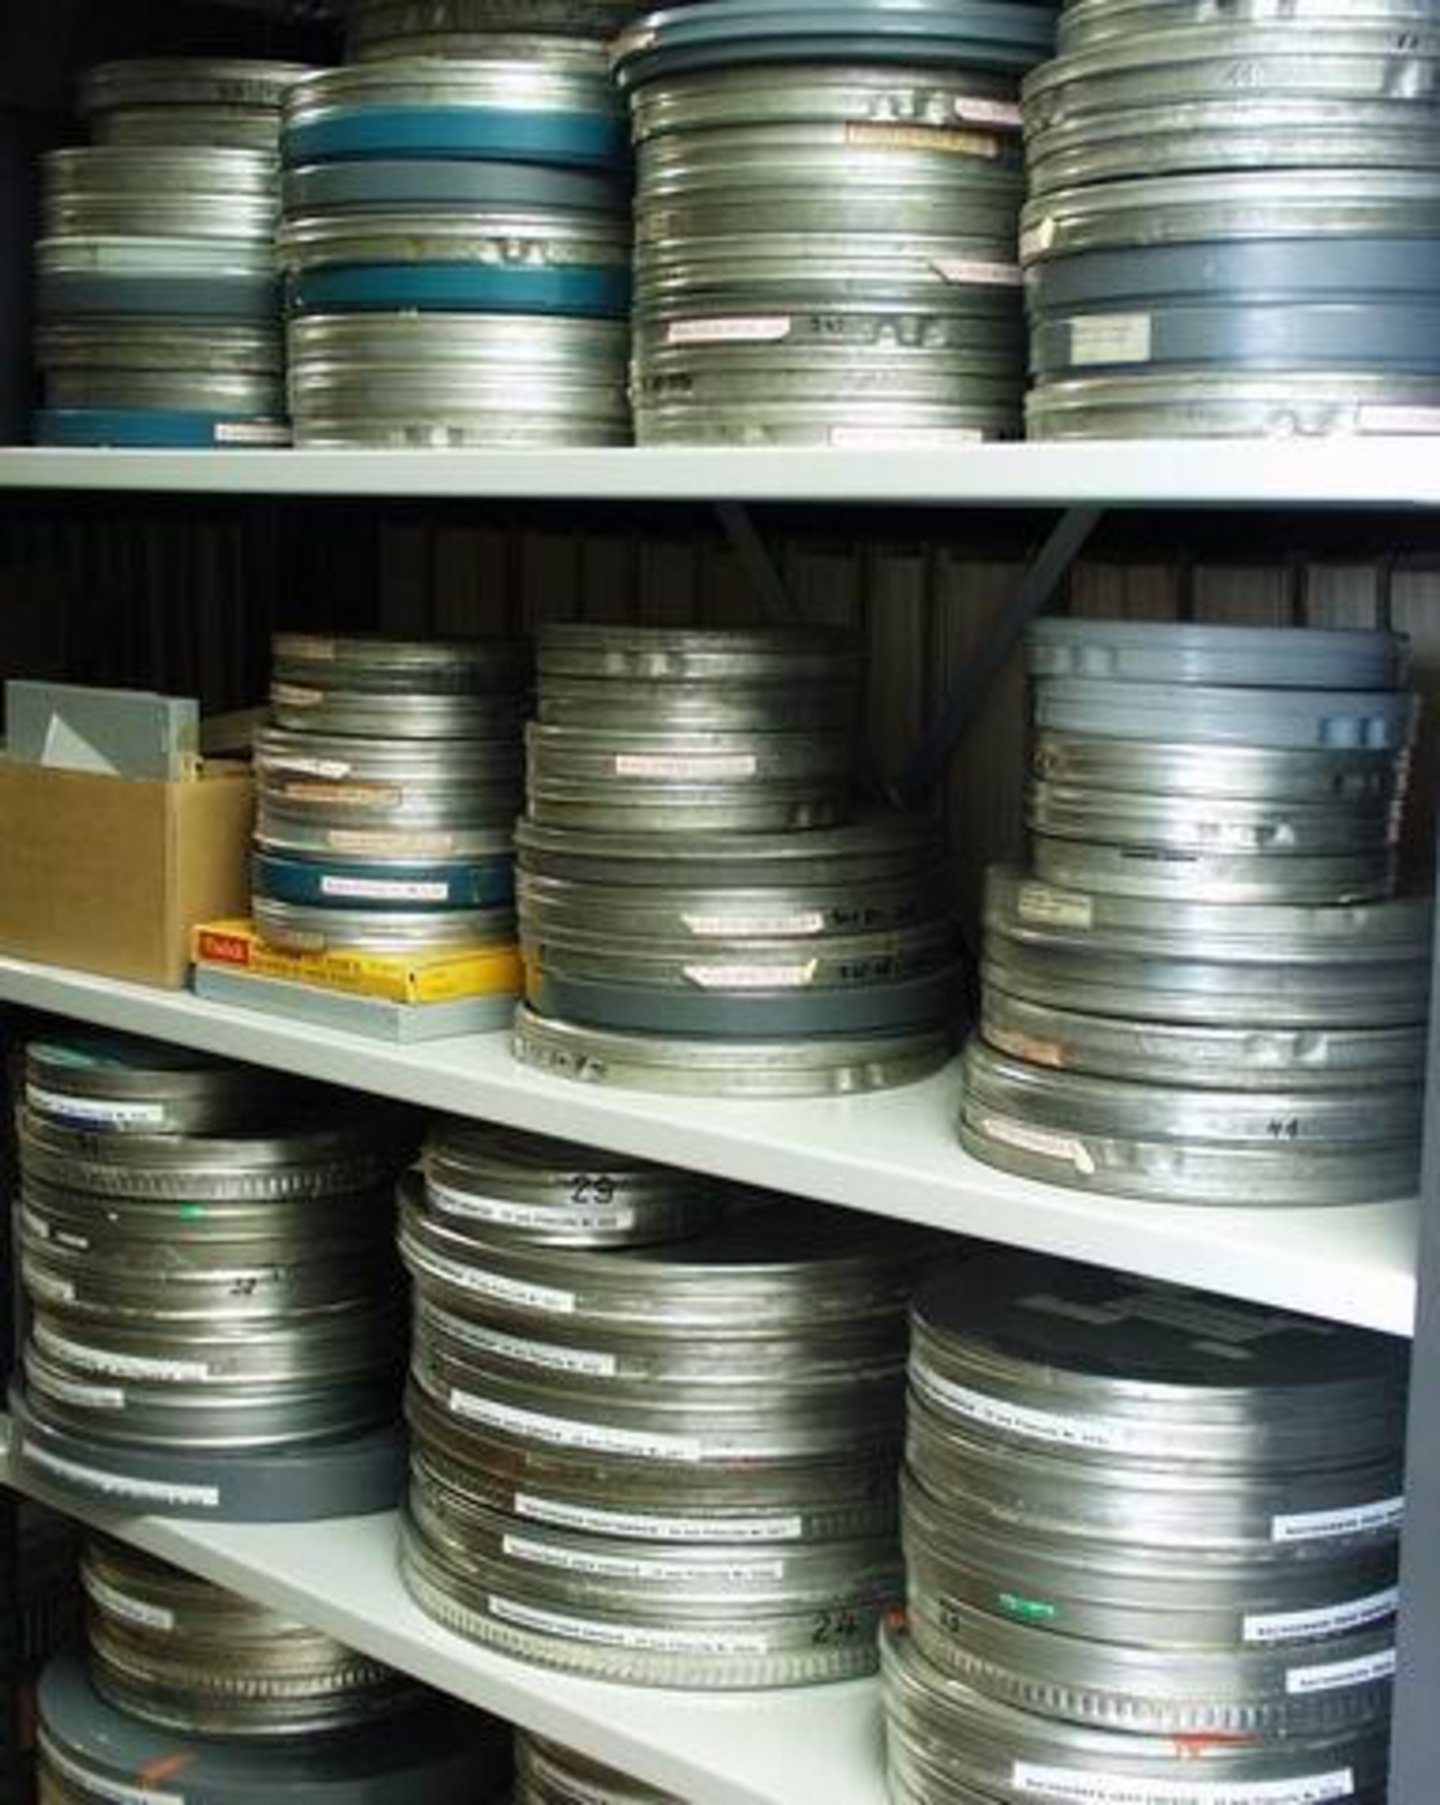 Die originalen 35- oder 18-mm-Polyetylenfilme bleiben hier so lange kühl, trocken und sicher liegen, bis ihre Kopien auf VHS-Video oder DVD in wenigen Jahren unbrauchbar sein werden. Dann kann man von ihnen neue Gebrauchskopien ziehen.